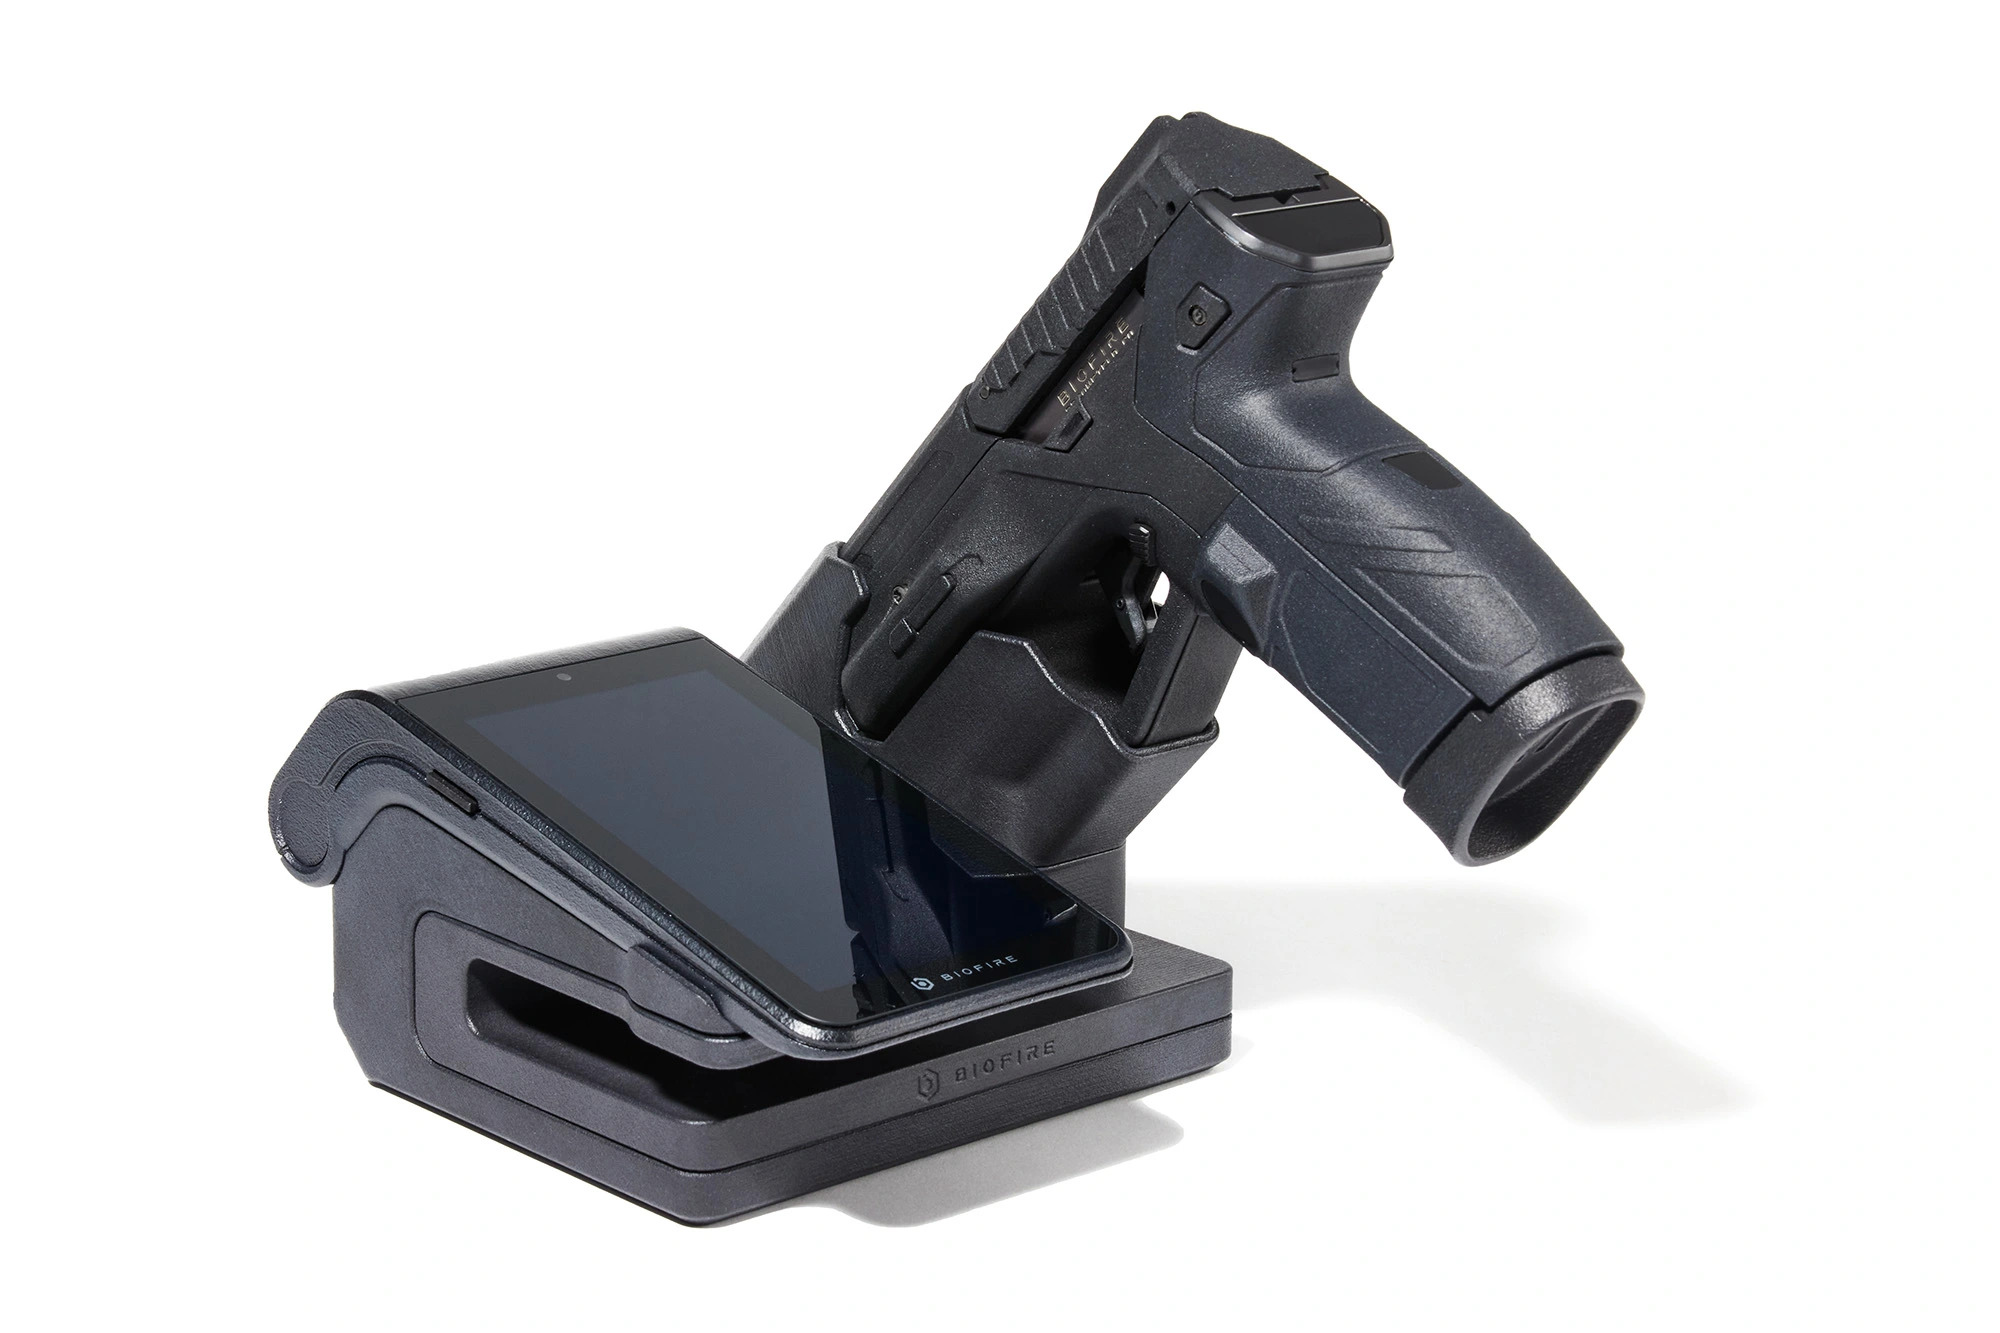 Inventan una cámara de seguridad con pistola incorporada 